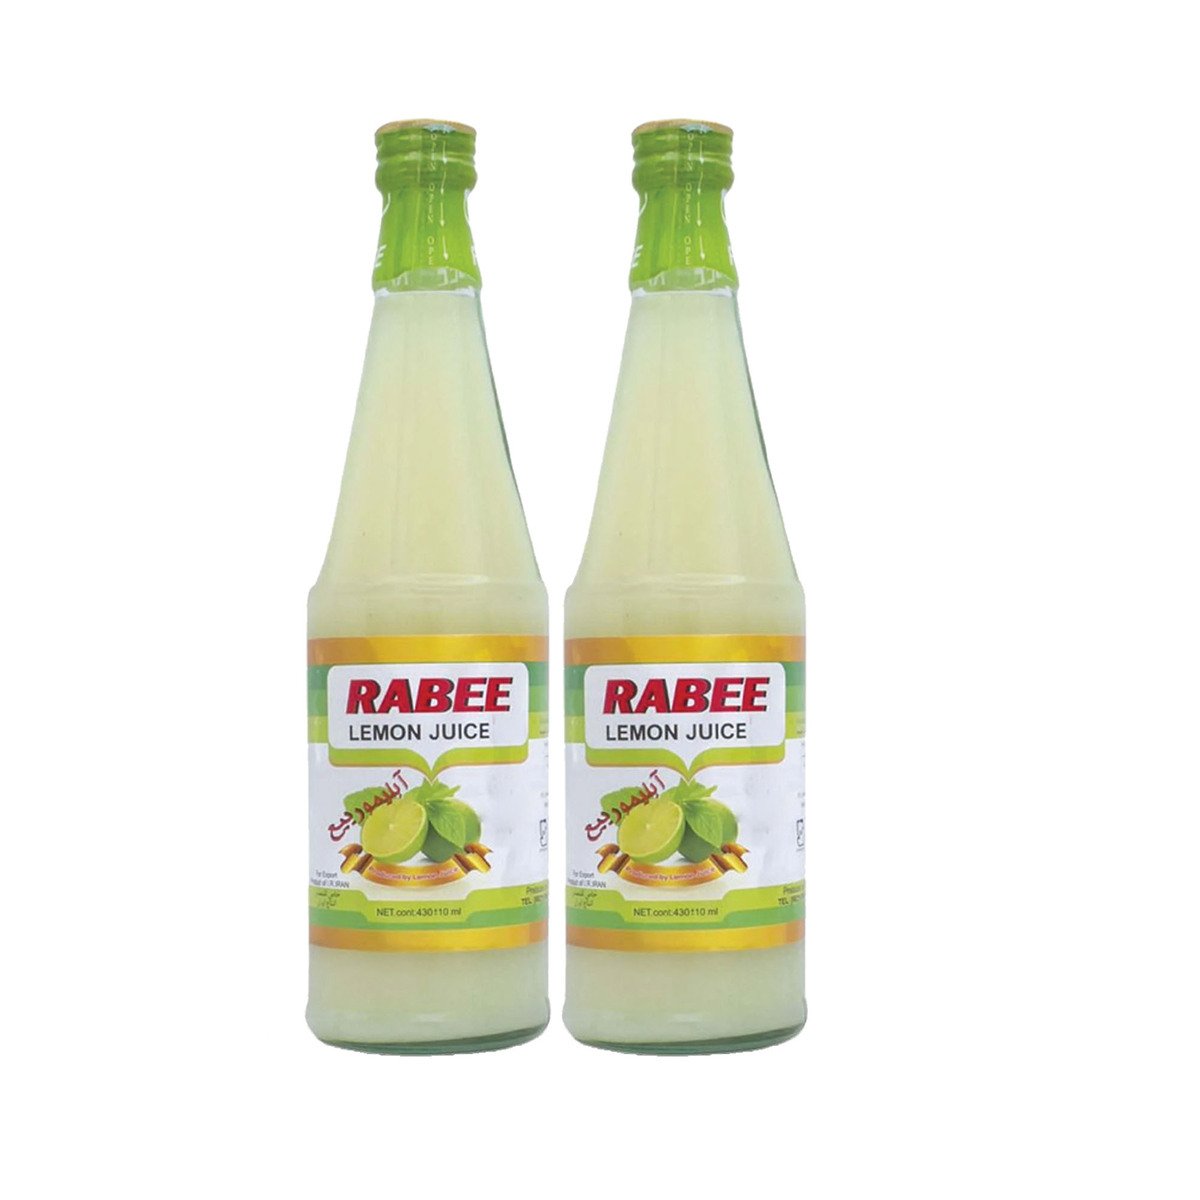 Rabee Lemon Juice 2 x 430ml